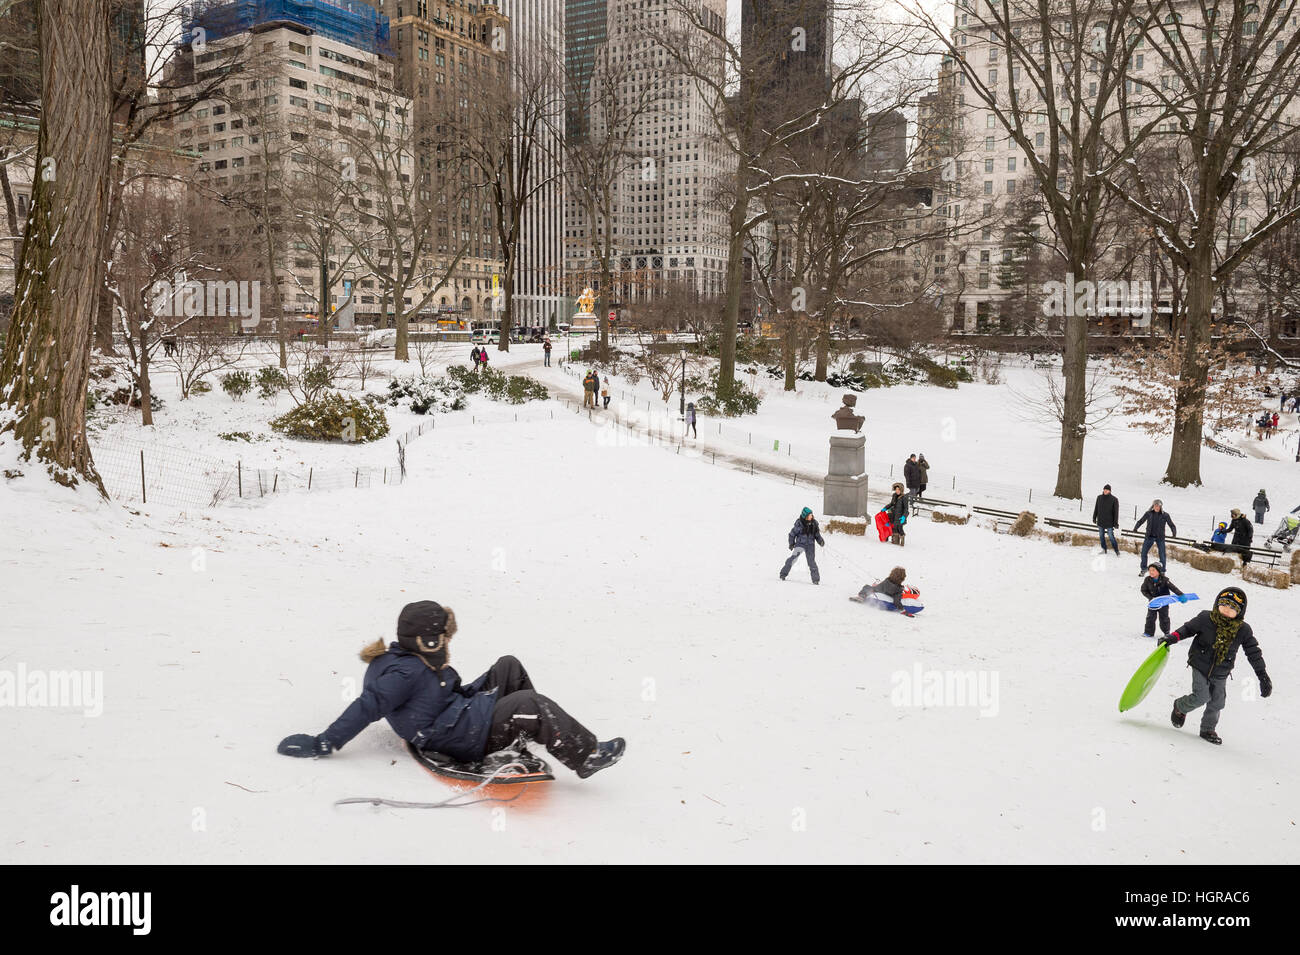 NEW YORK CITY - 8. Januar 2017: Kinder nehmen zu den Hügeln des Central Parks mit ihren Schlitten nach einem Winter Schneesturm in der Stadt. Stockfoto